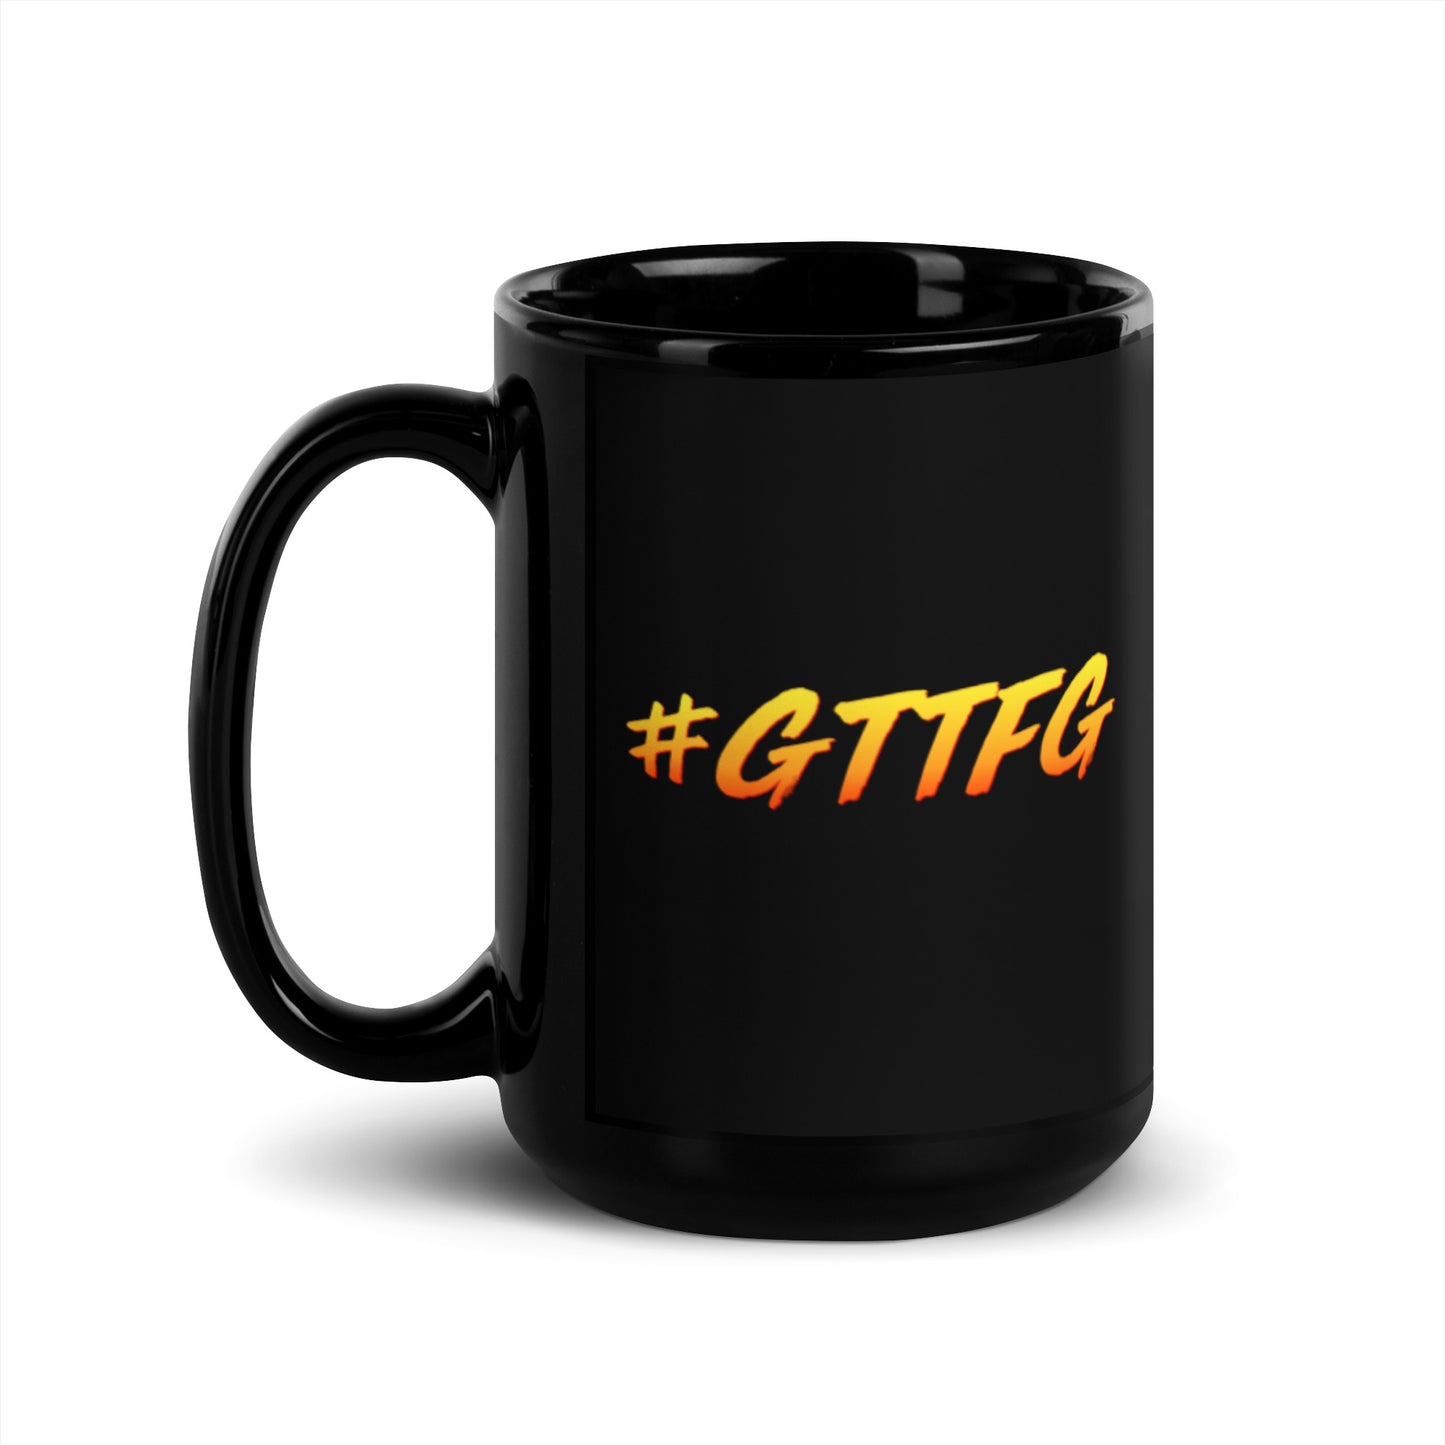 #GTTFG Mug